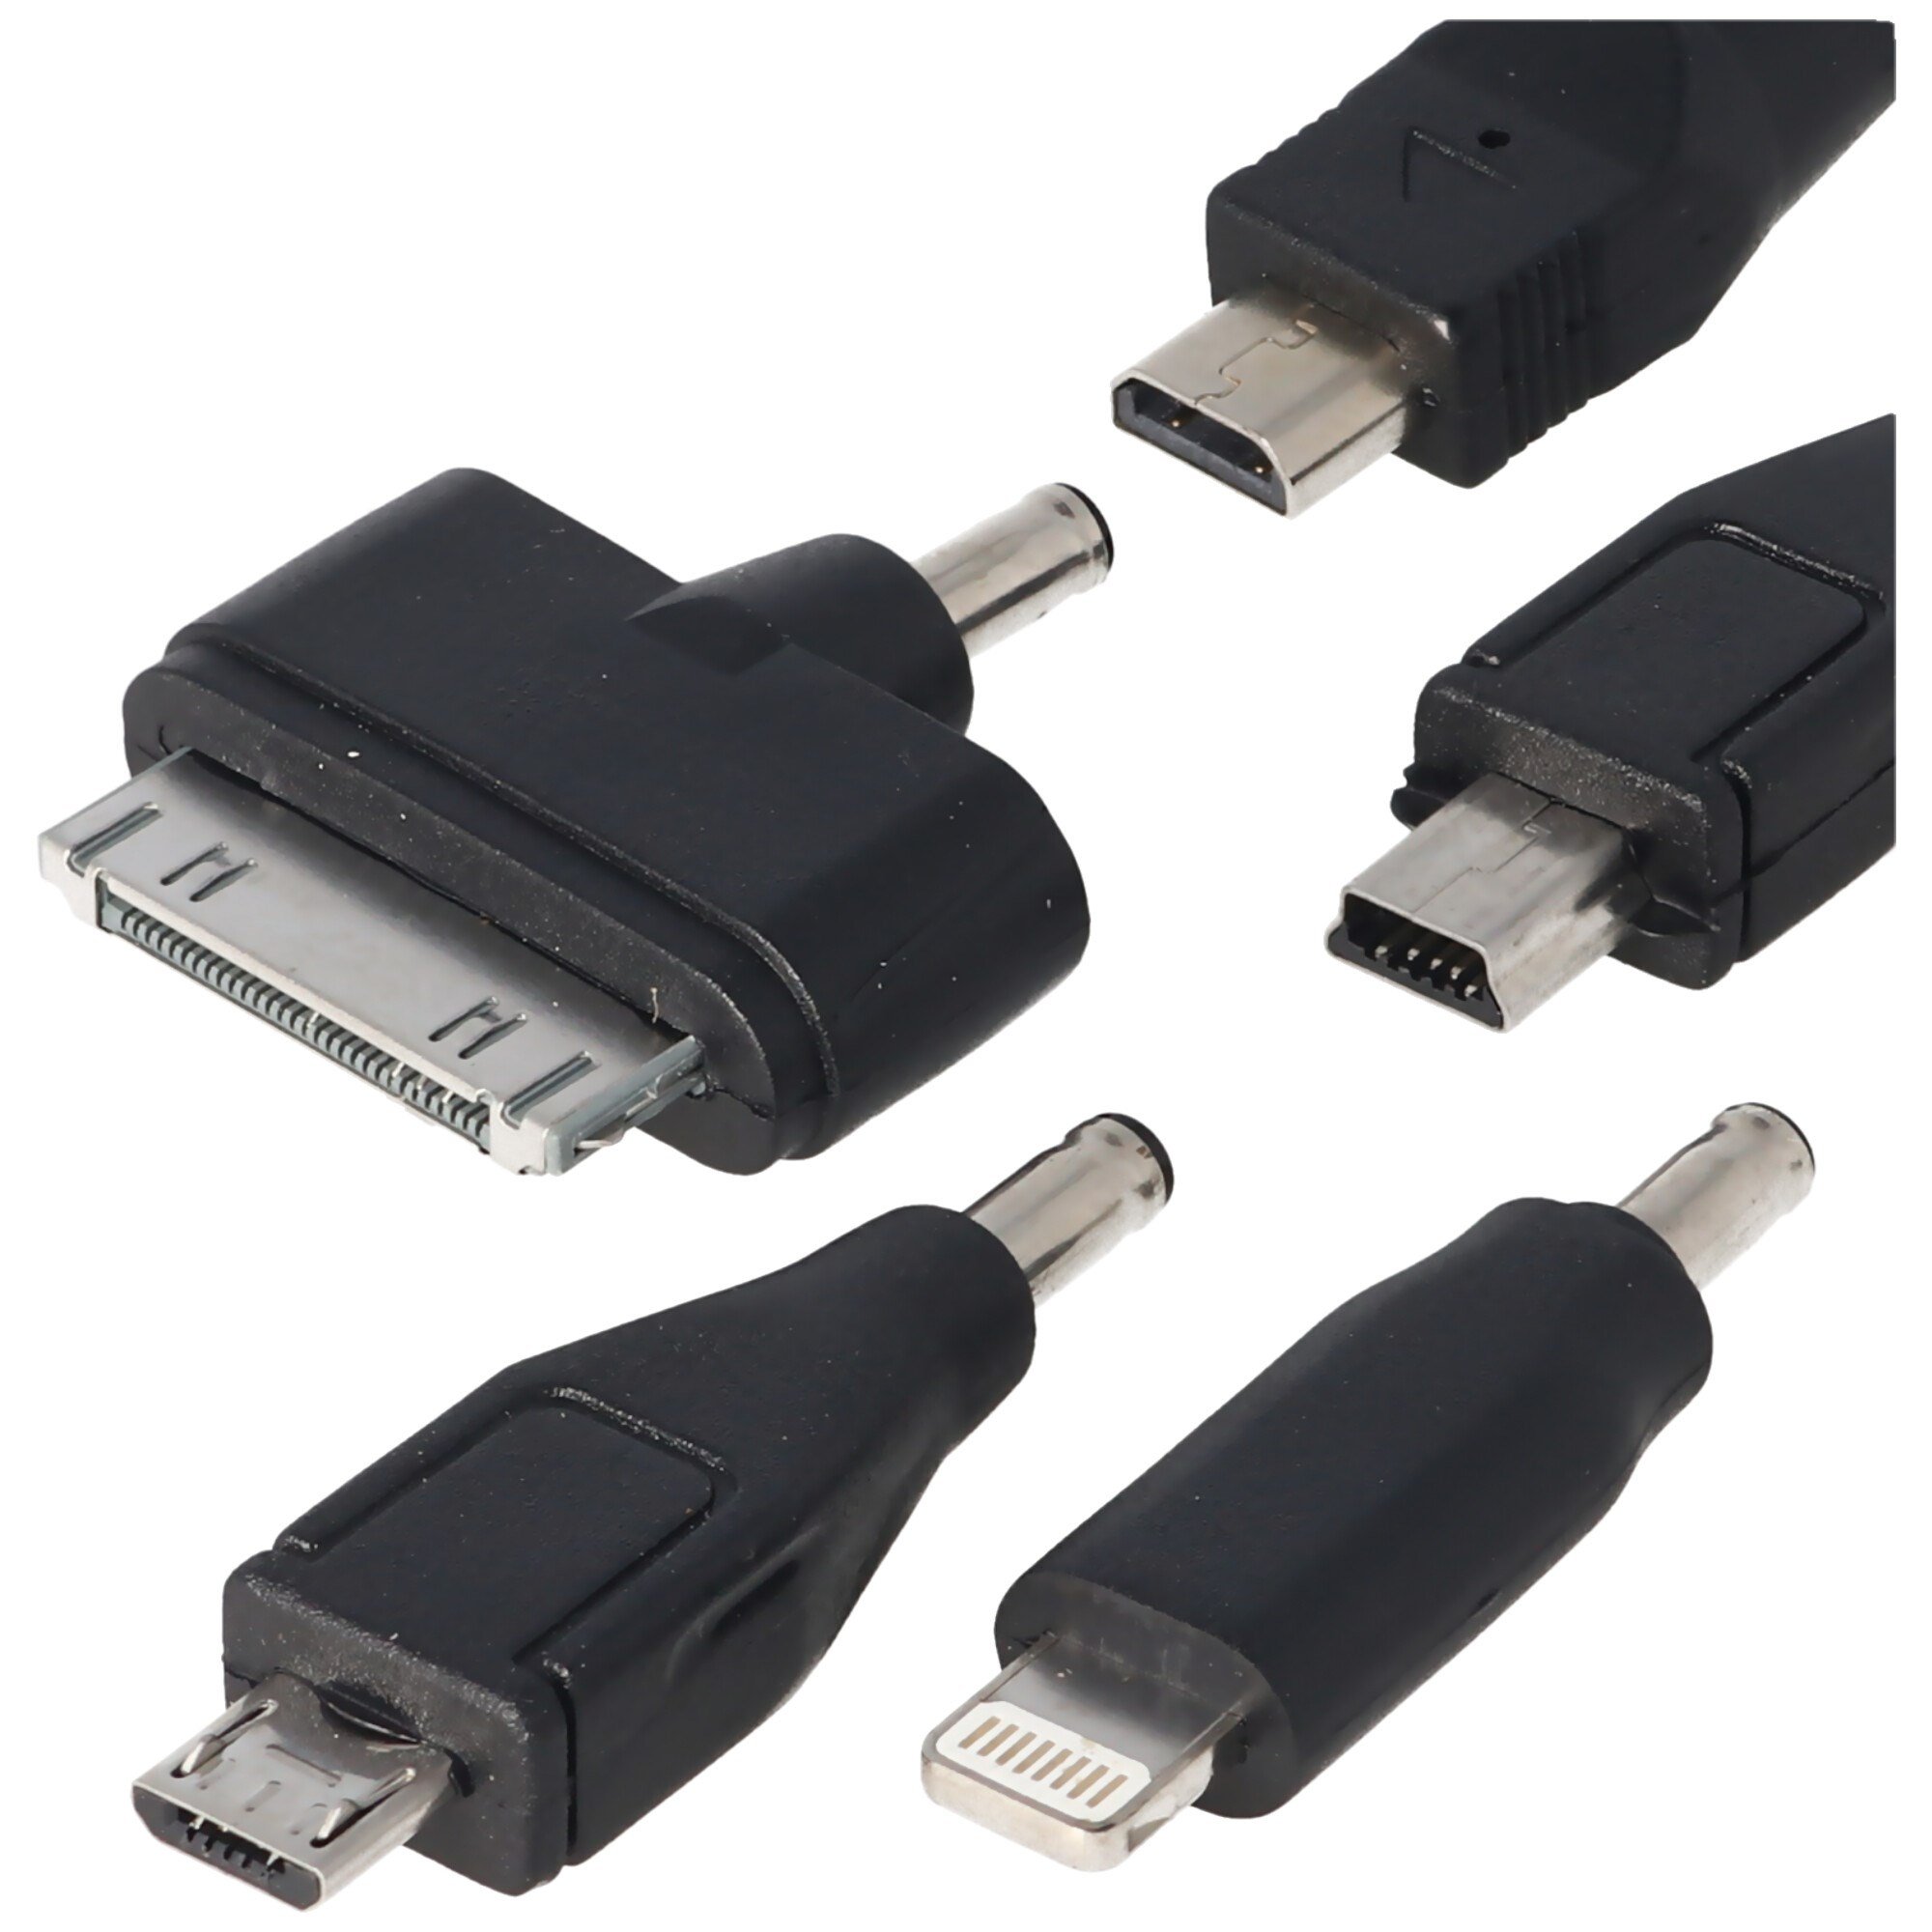 5 parçalı 12 volt USB şarj cihazı, fişli Micro-USB, Mini-USB, iPhone 3, 4,  5,